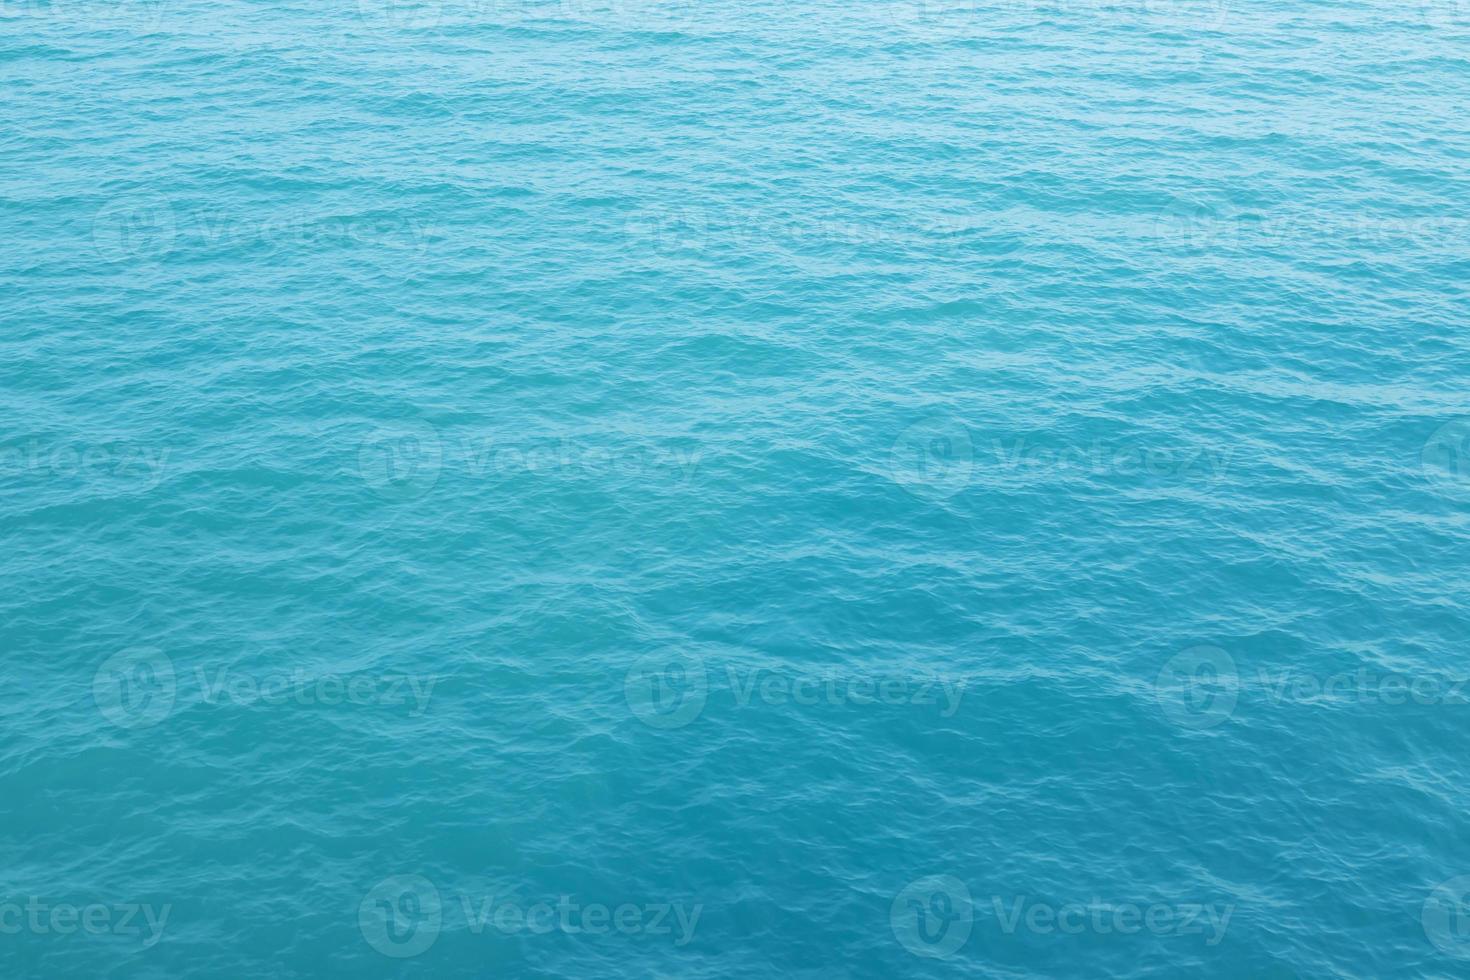 meereswellen in ozeanwellen, die kräuselwasser spritzen. Hintergrund des blauen Wassers. foto